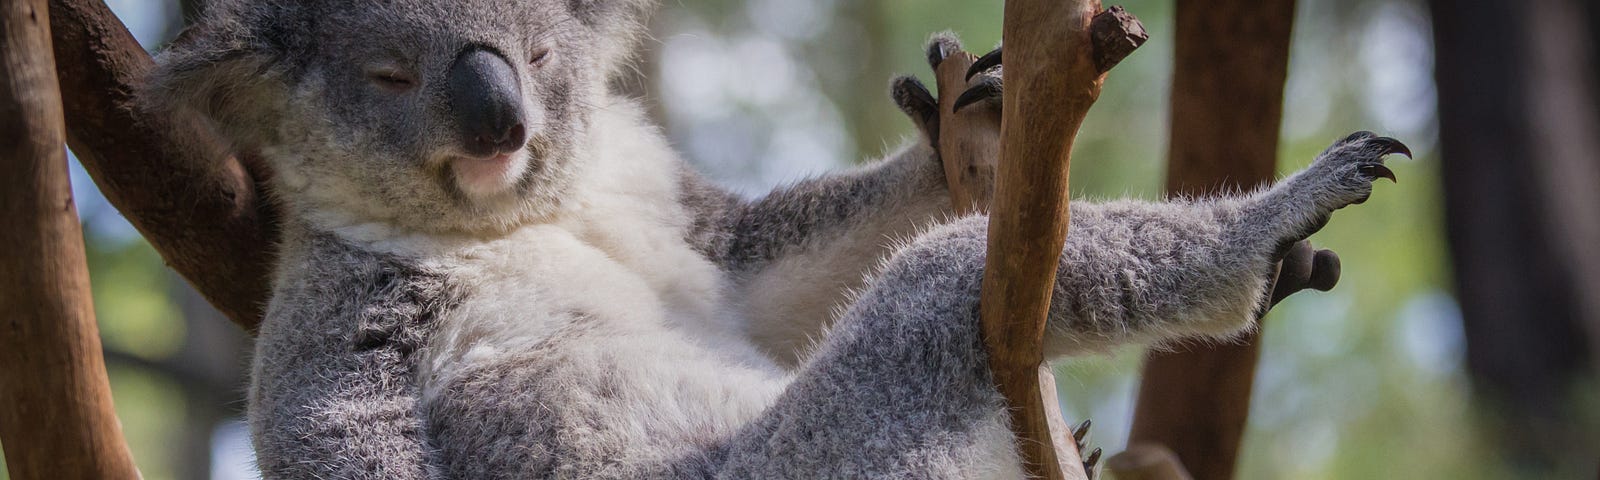 koala bear sleeping in a tree